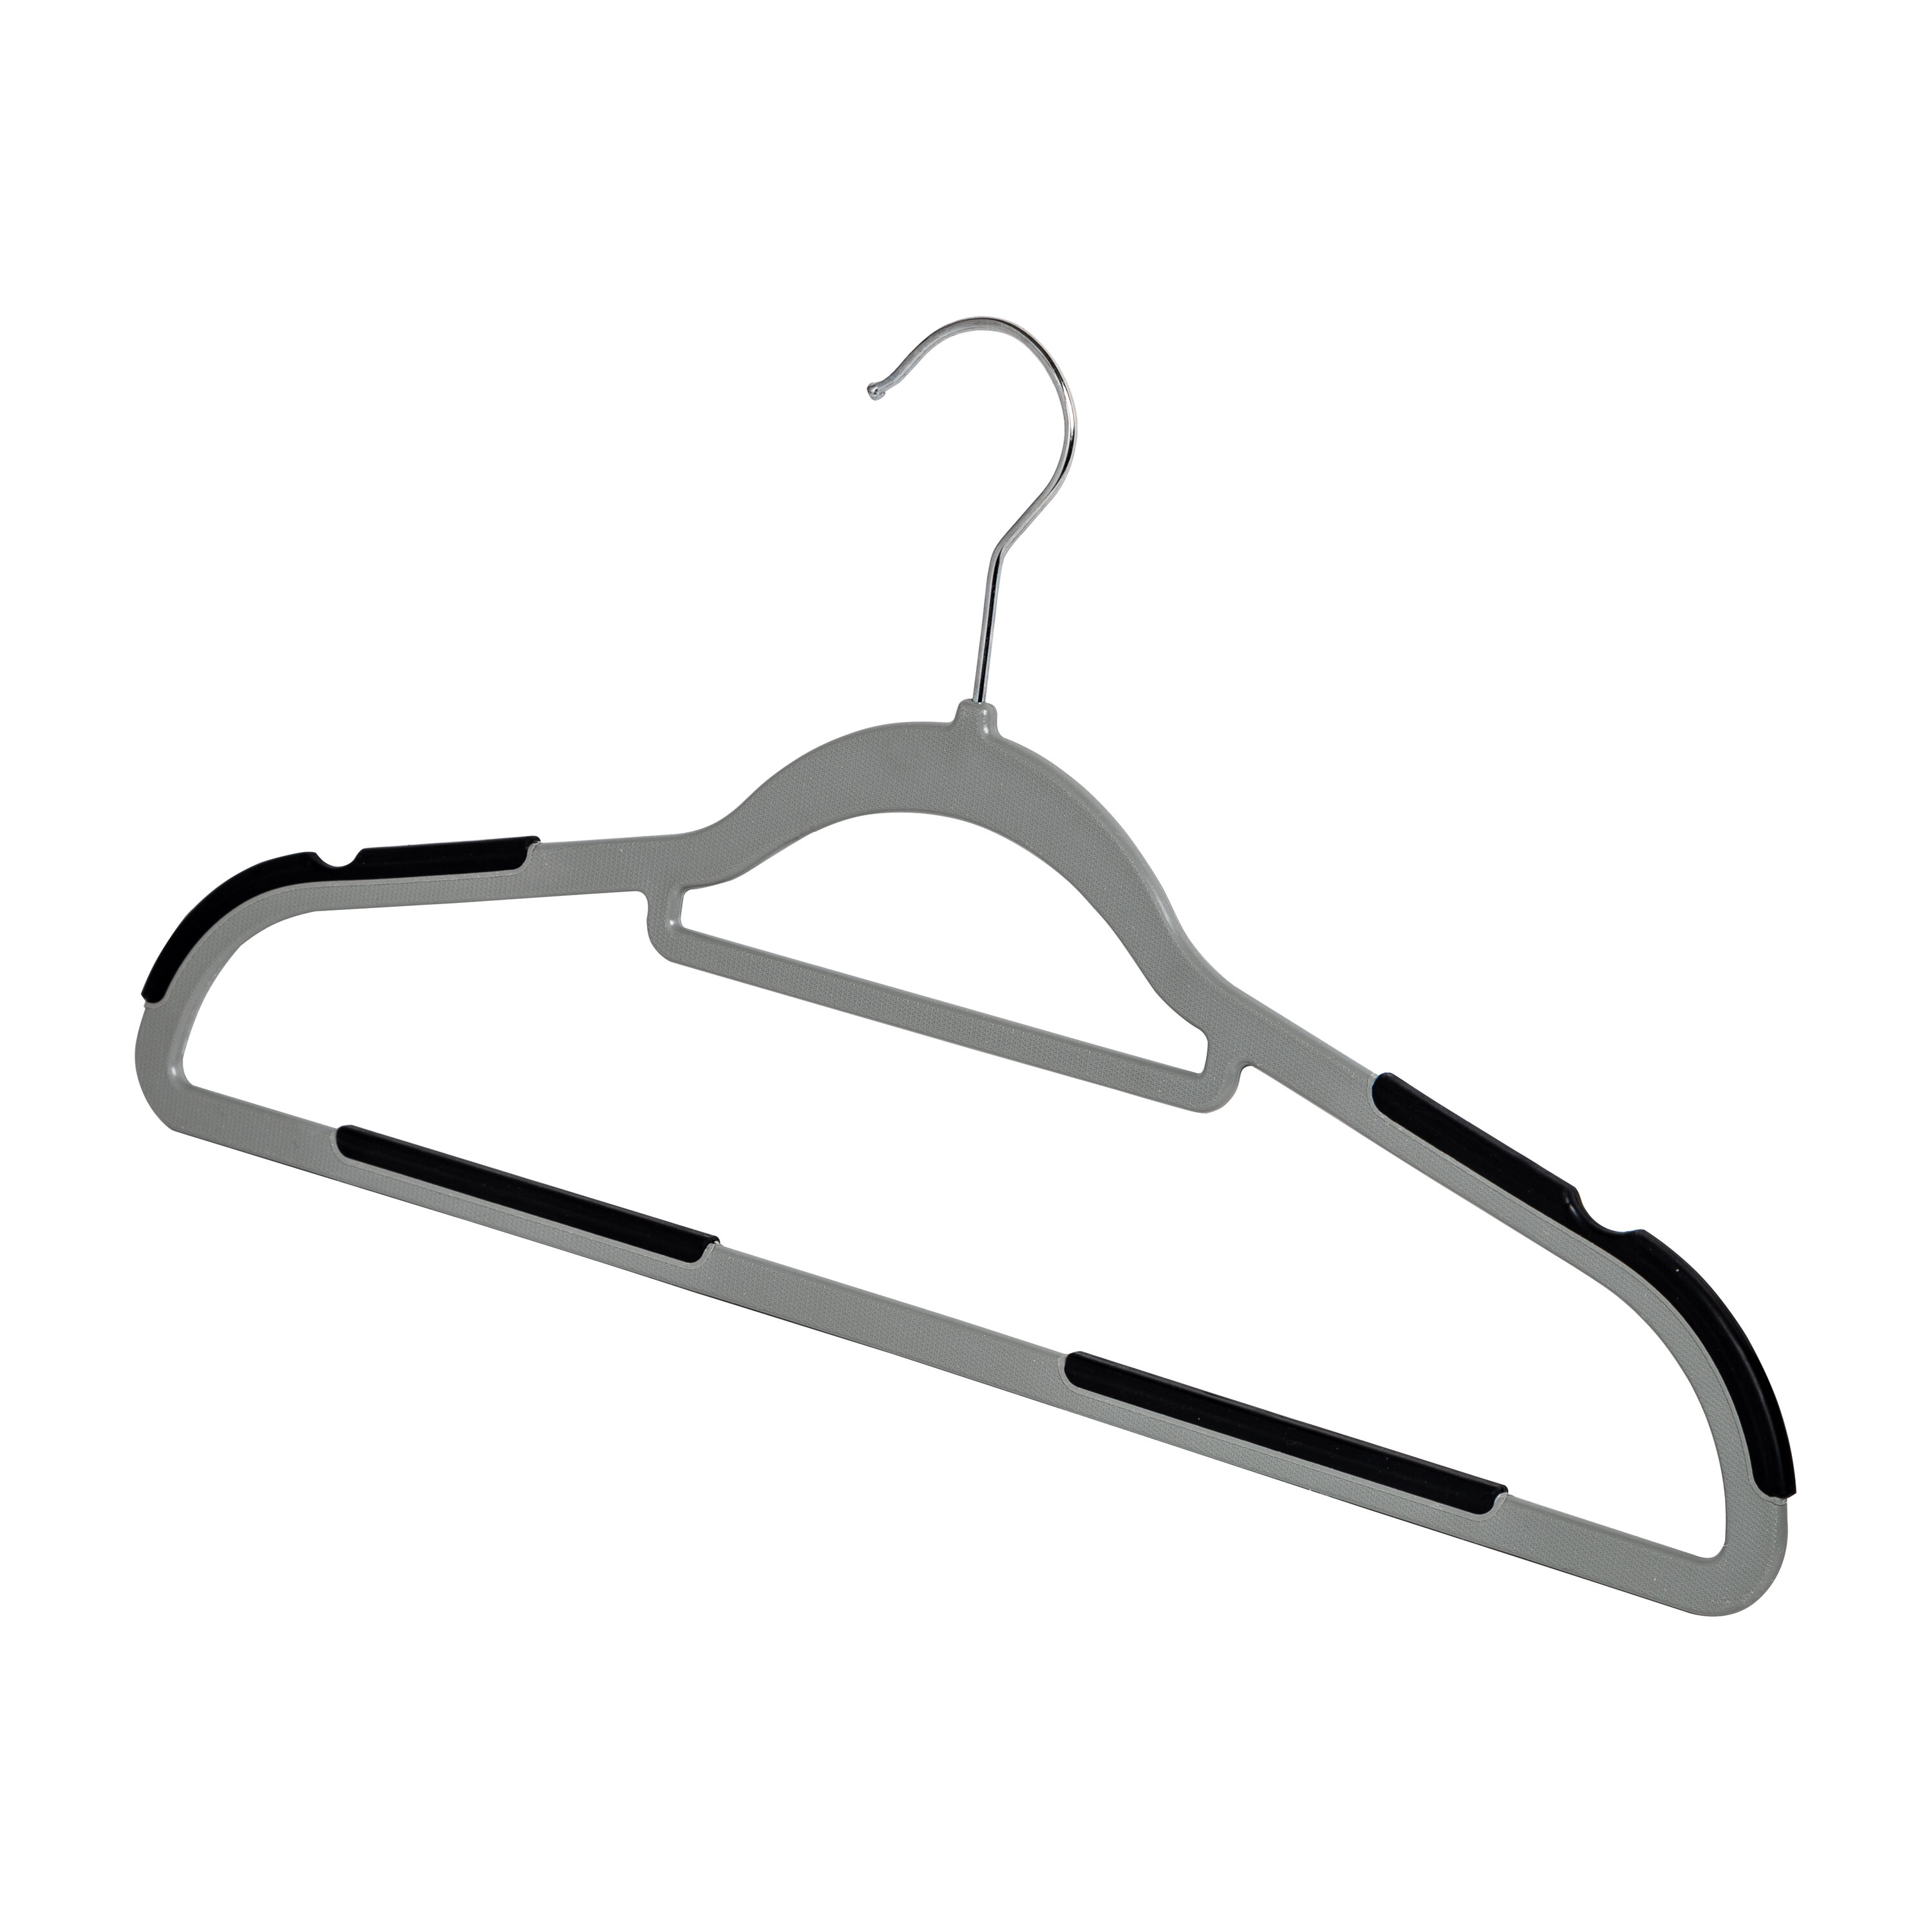 https://assets.wfcdn.com/im/31519434/compr-r85/1217/121786153/carli-plastic-non-slip-standard-hanger-for-dressshirtsweater.jpg